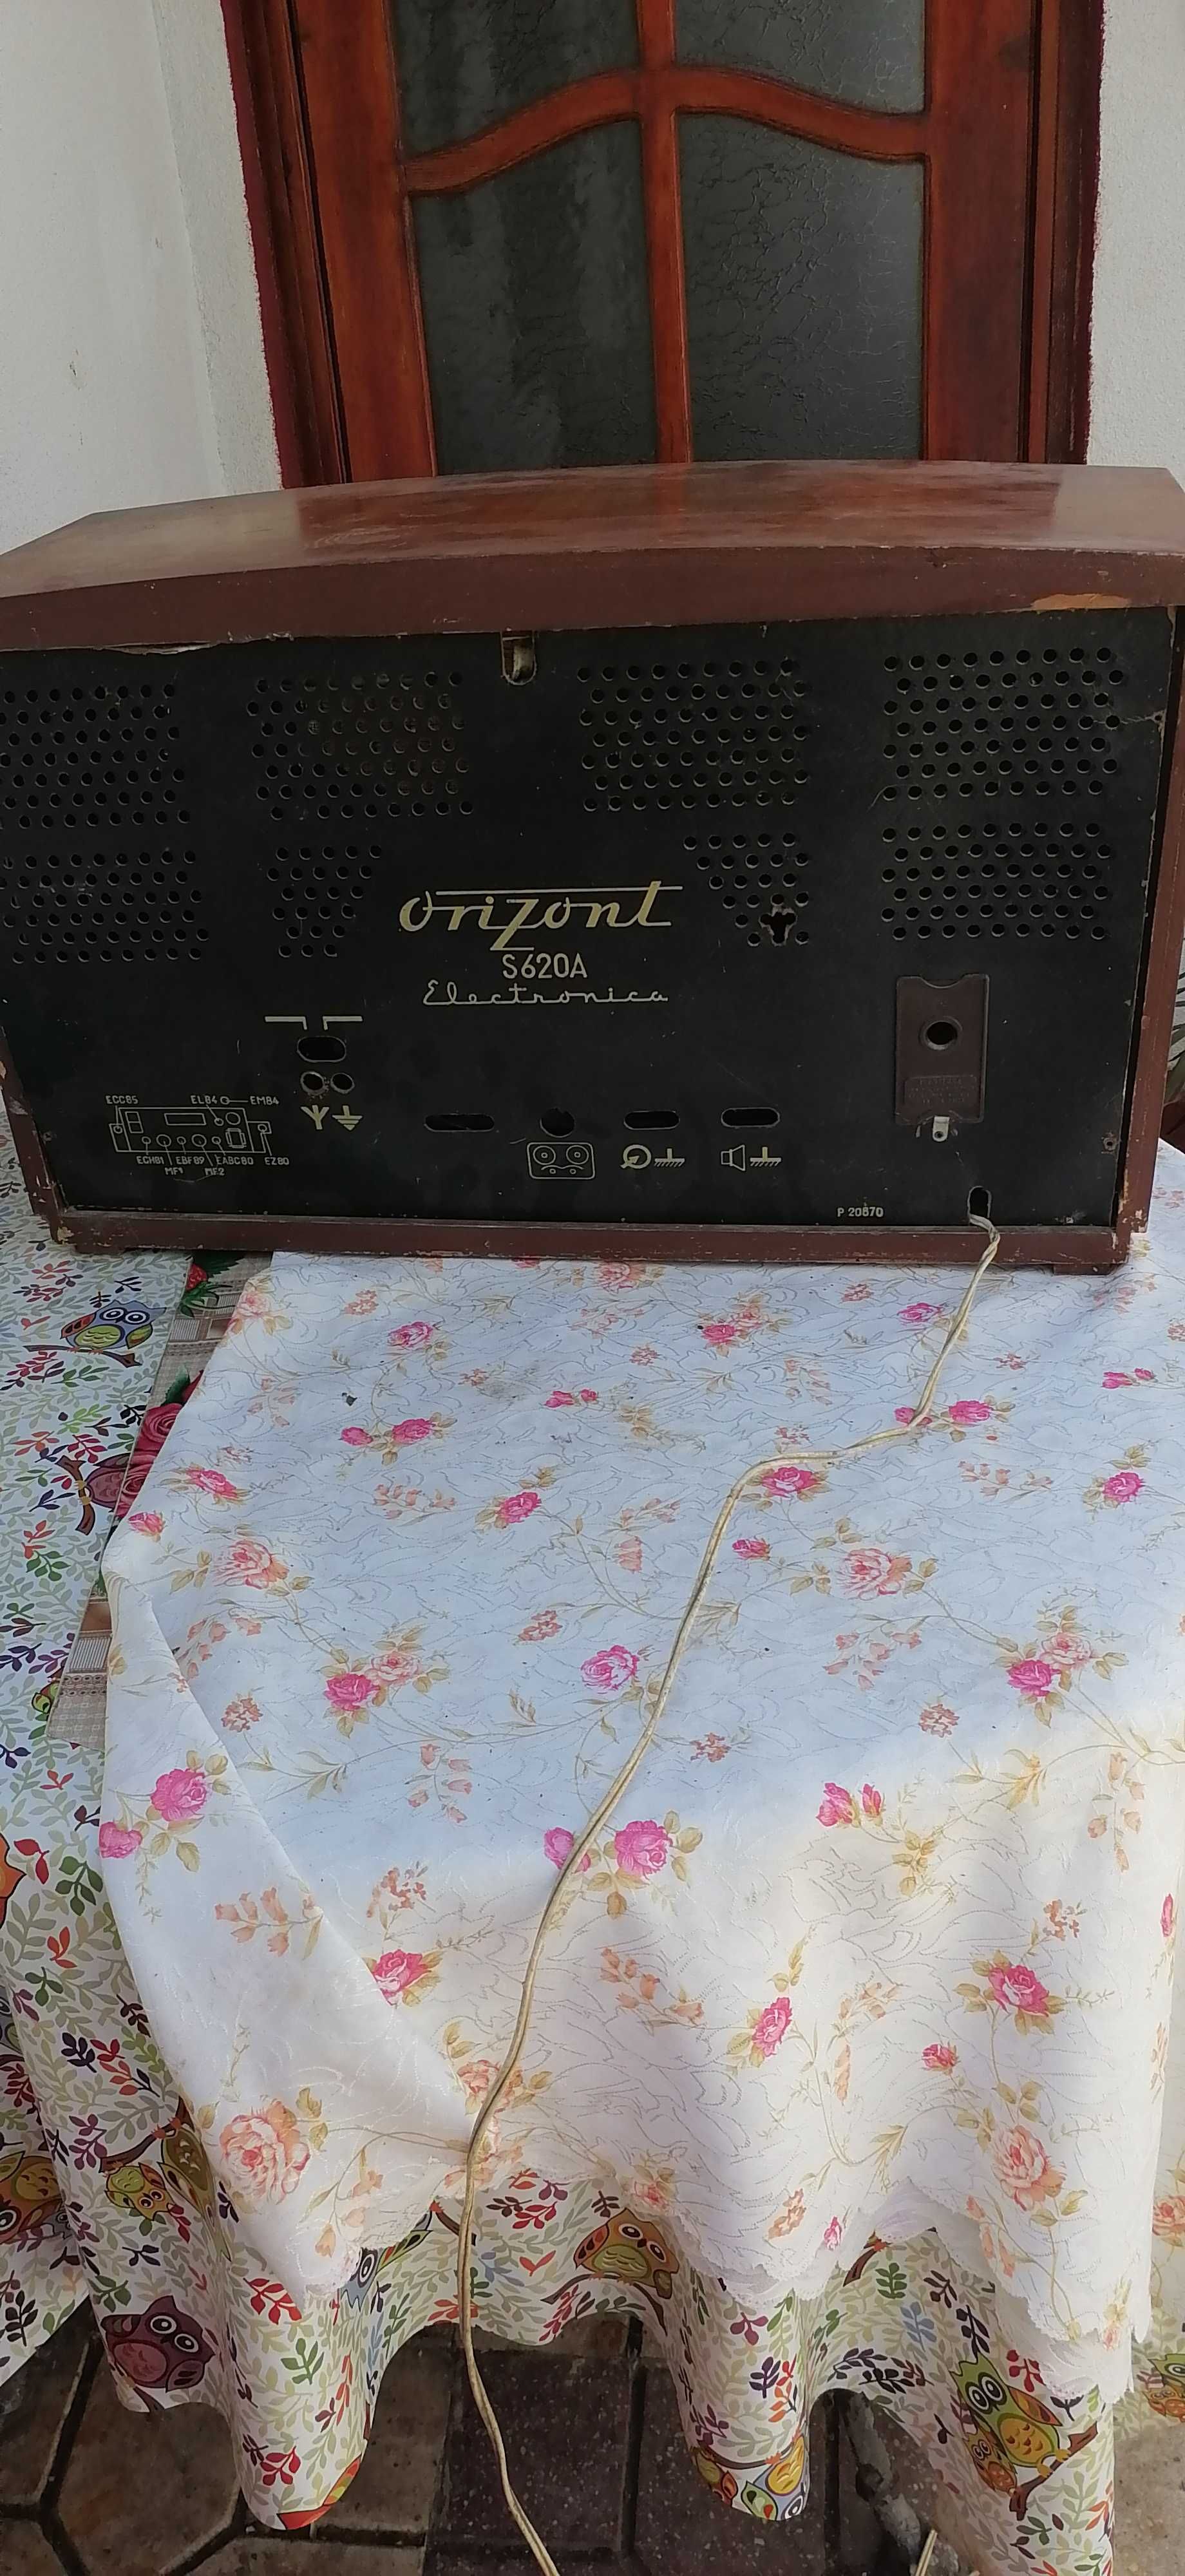 radio  orizont  cu  lampi  anul 1962  pret 200 lei